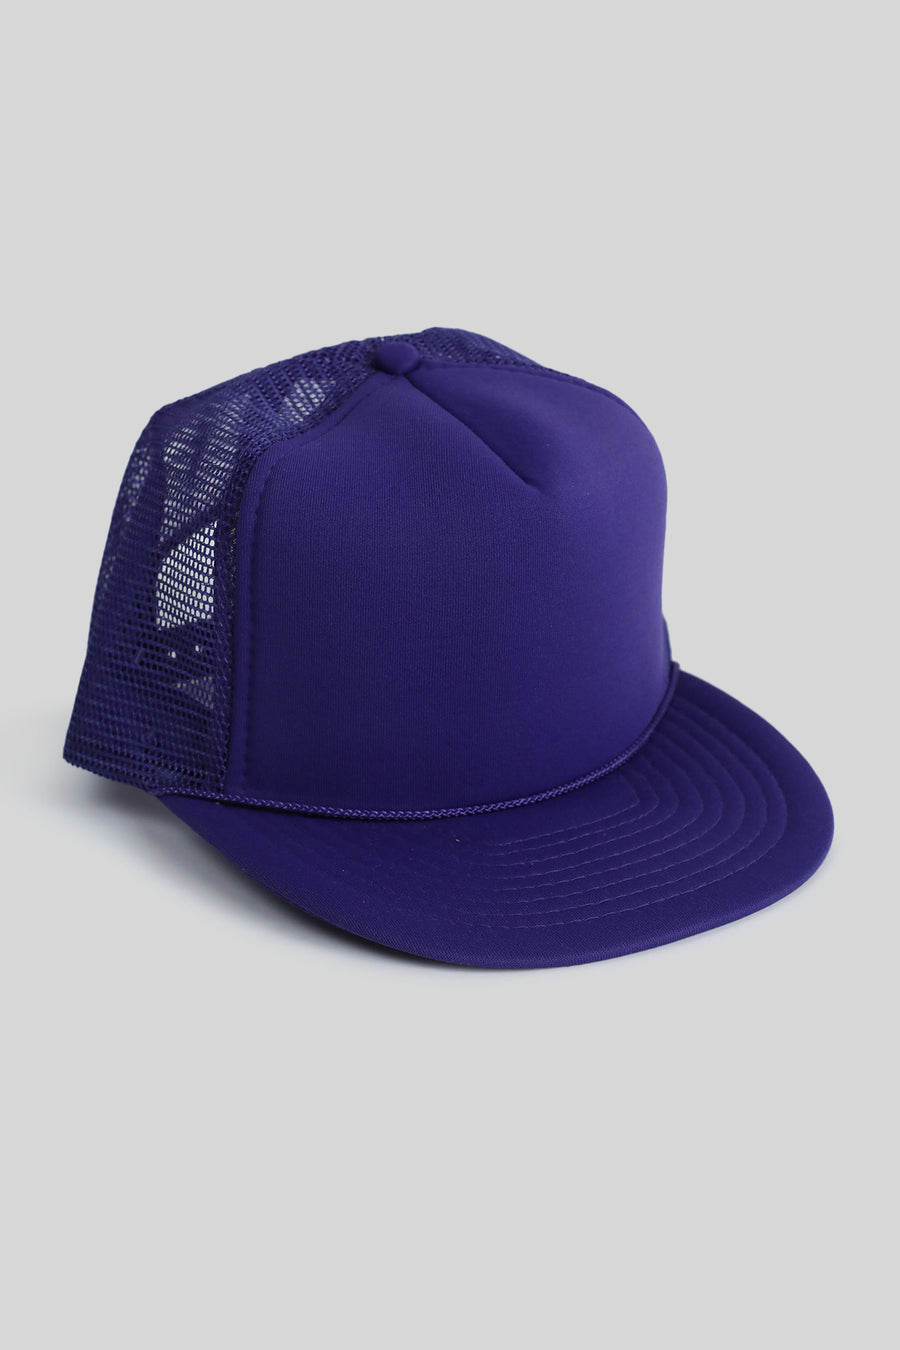 Vintage Deadstock Purple Trucker Hat